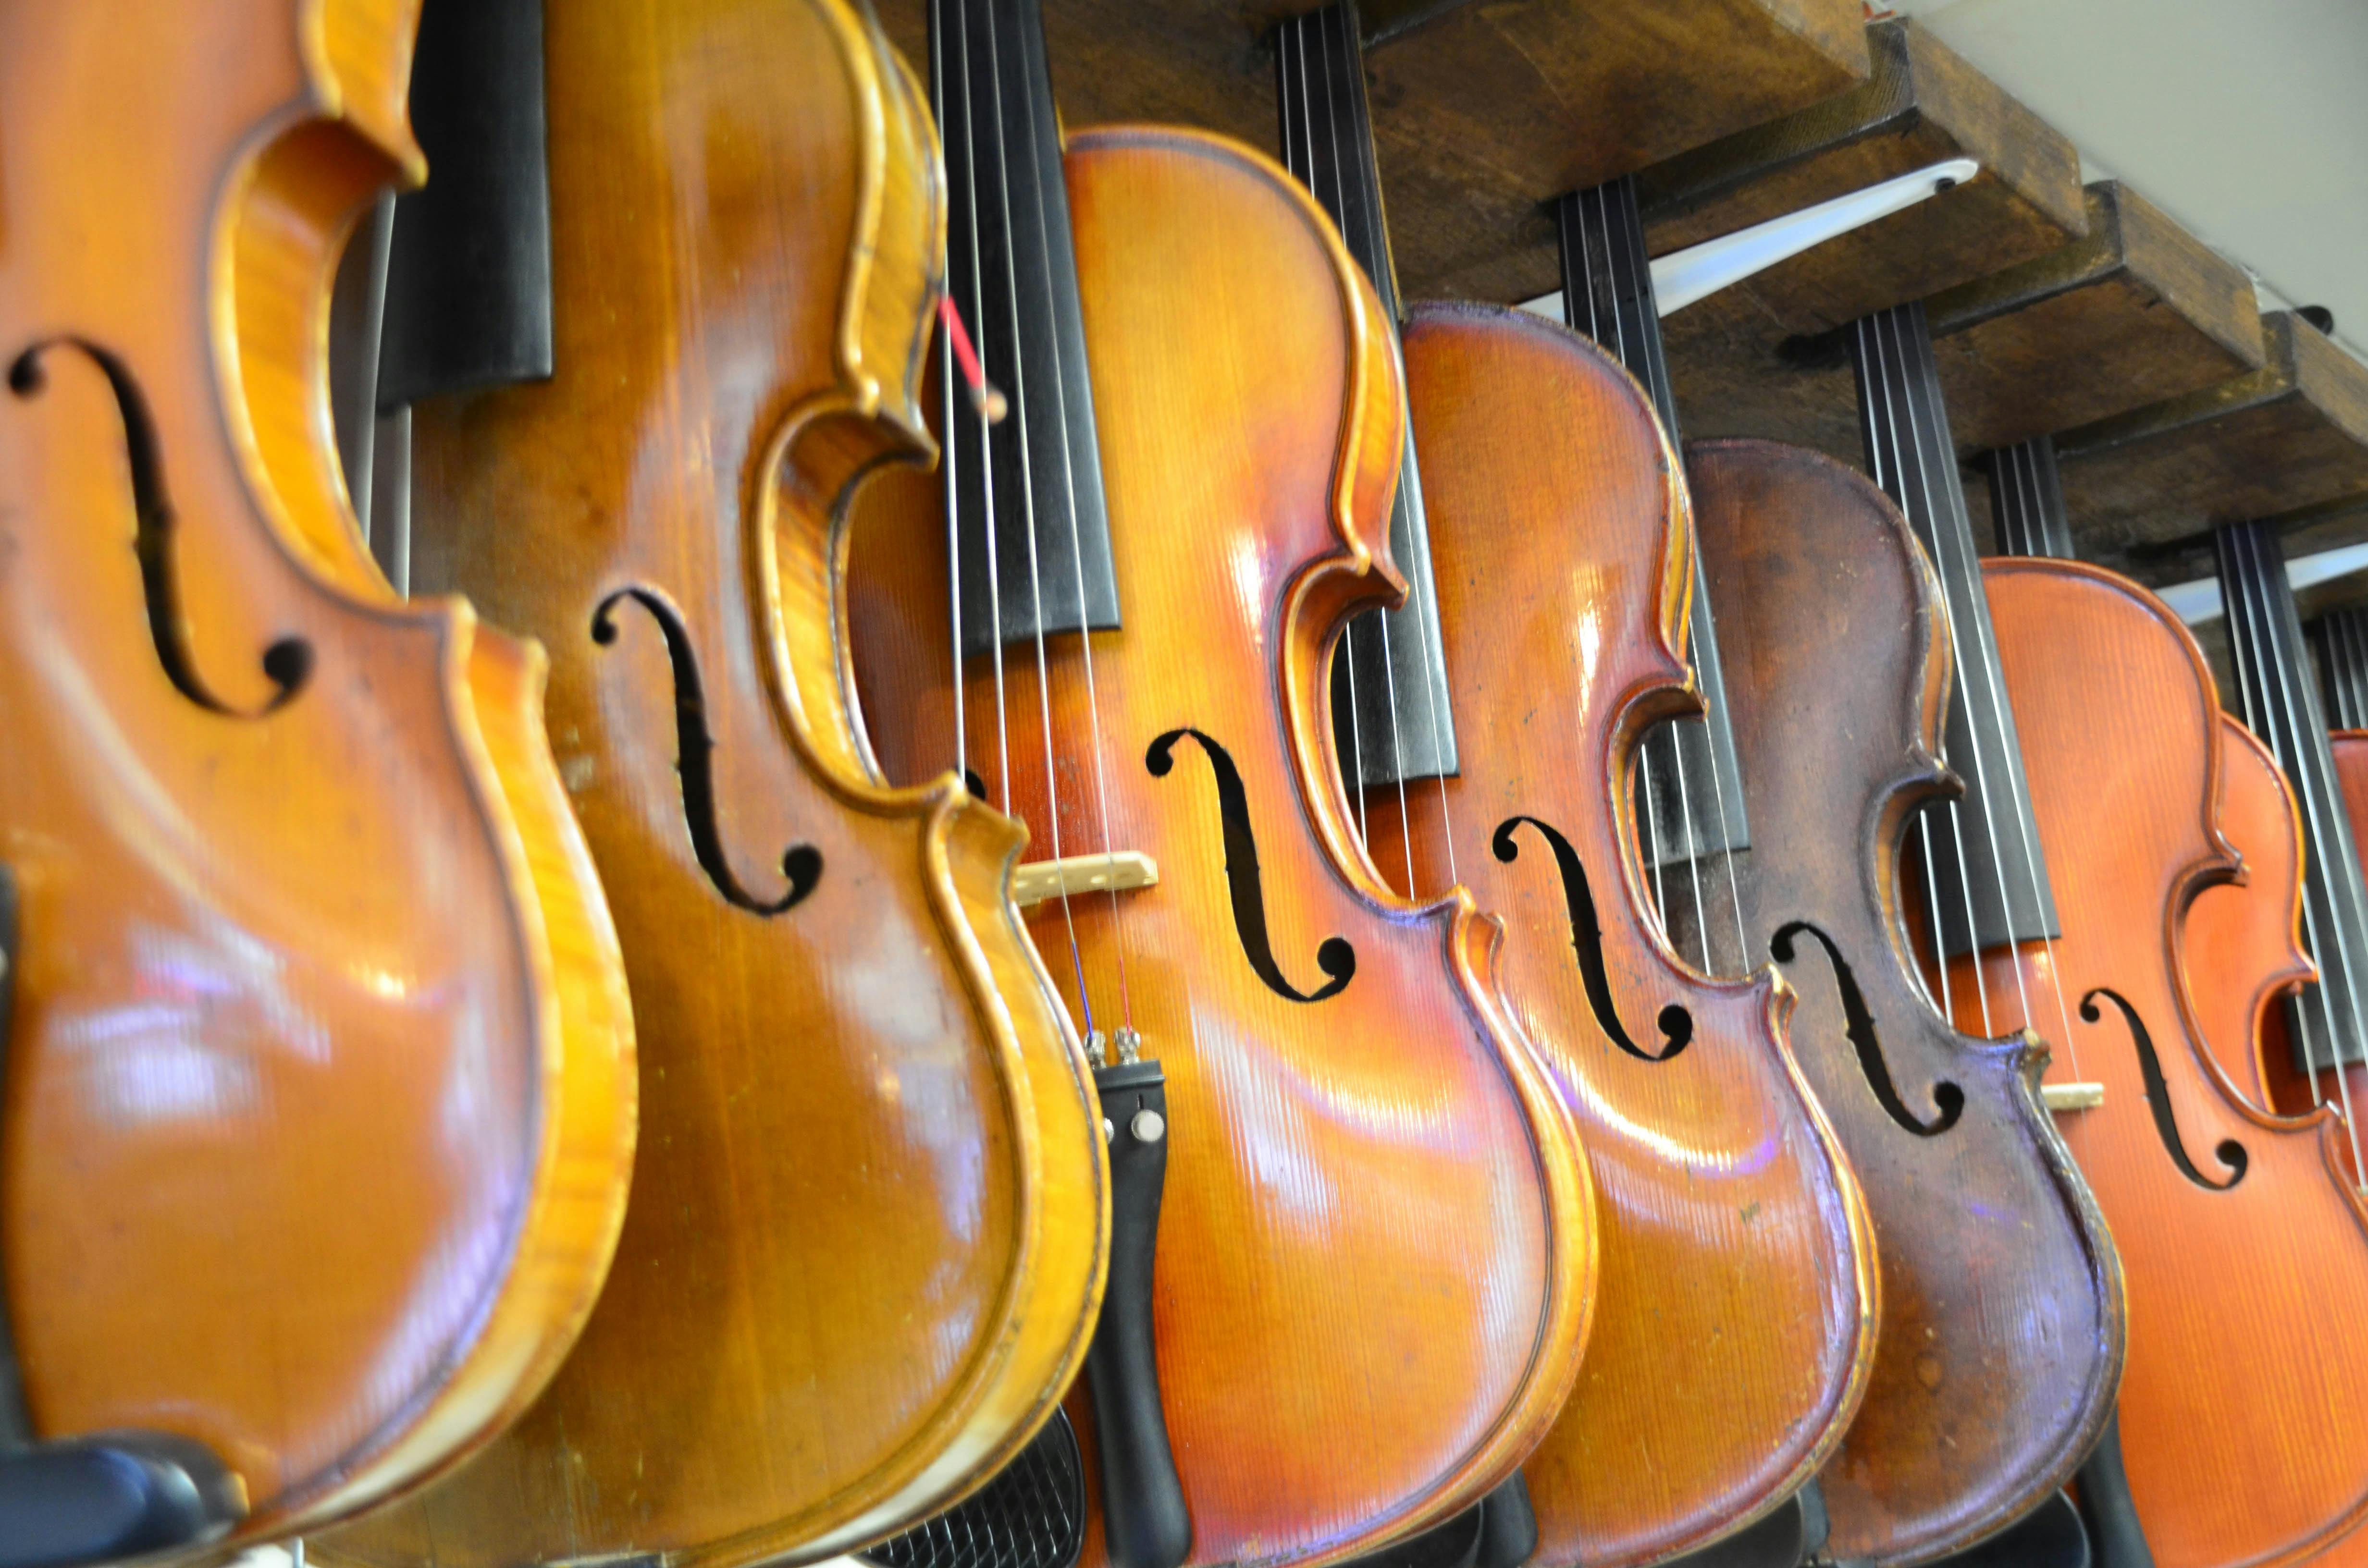 Barrs Fiddle Shop - Galax, VA